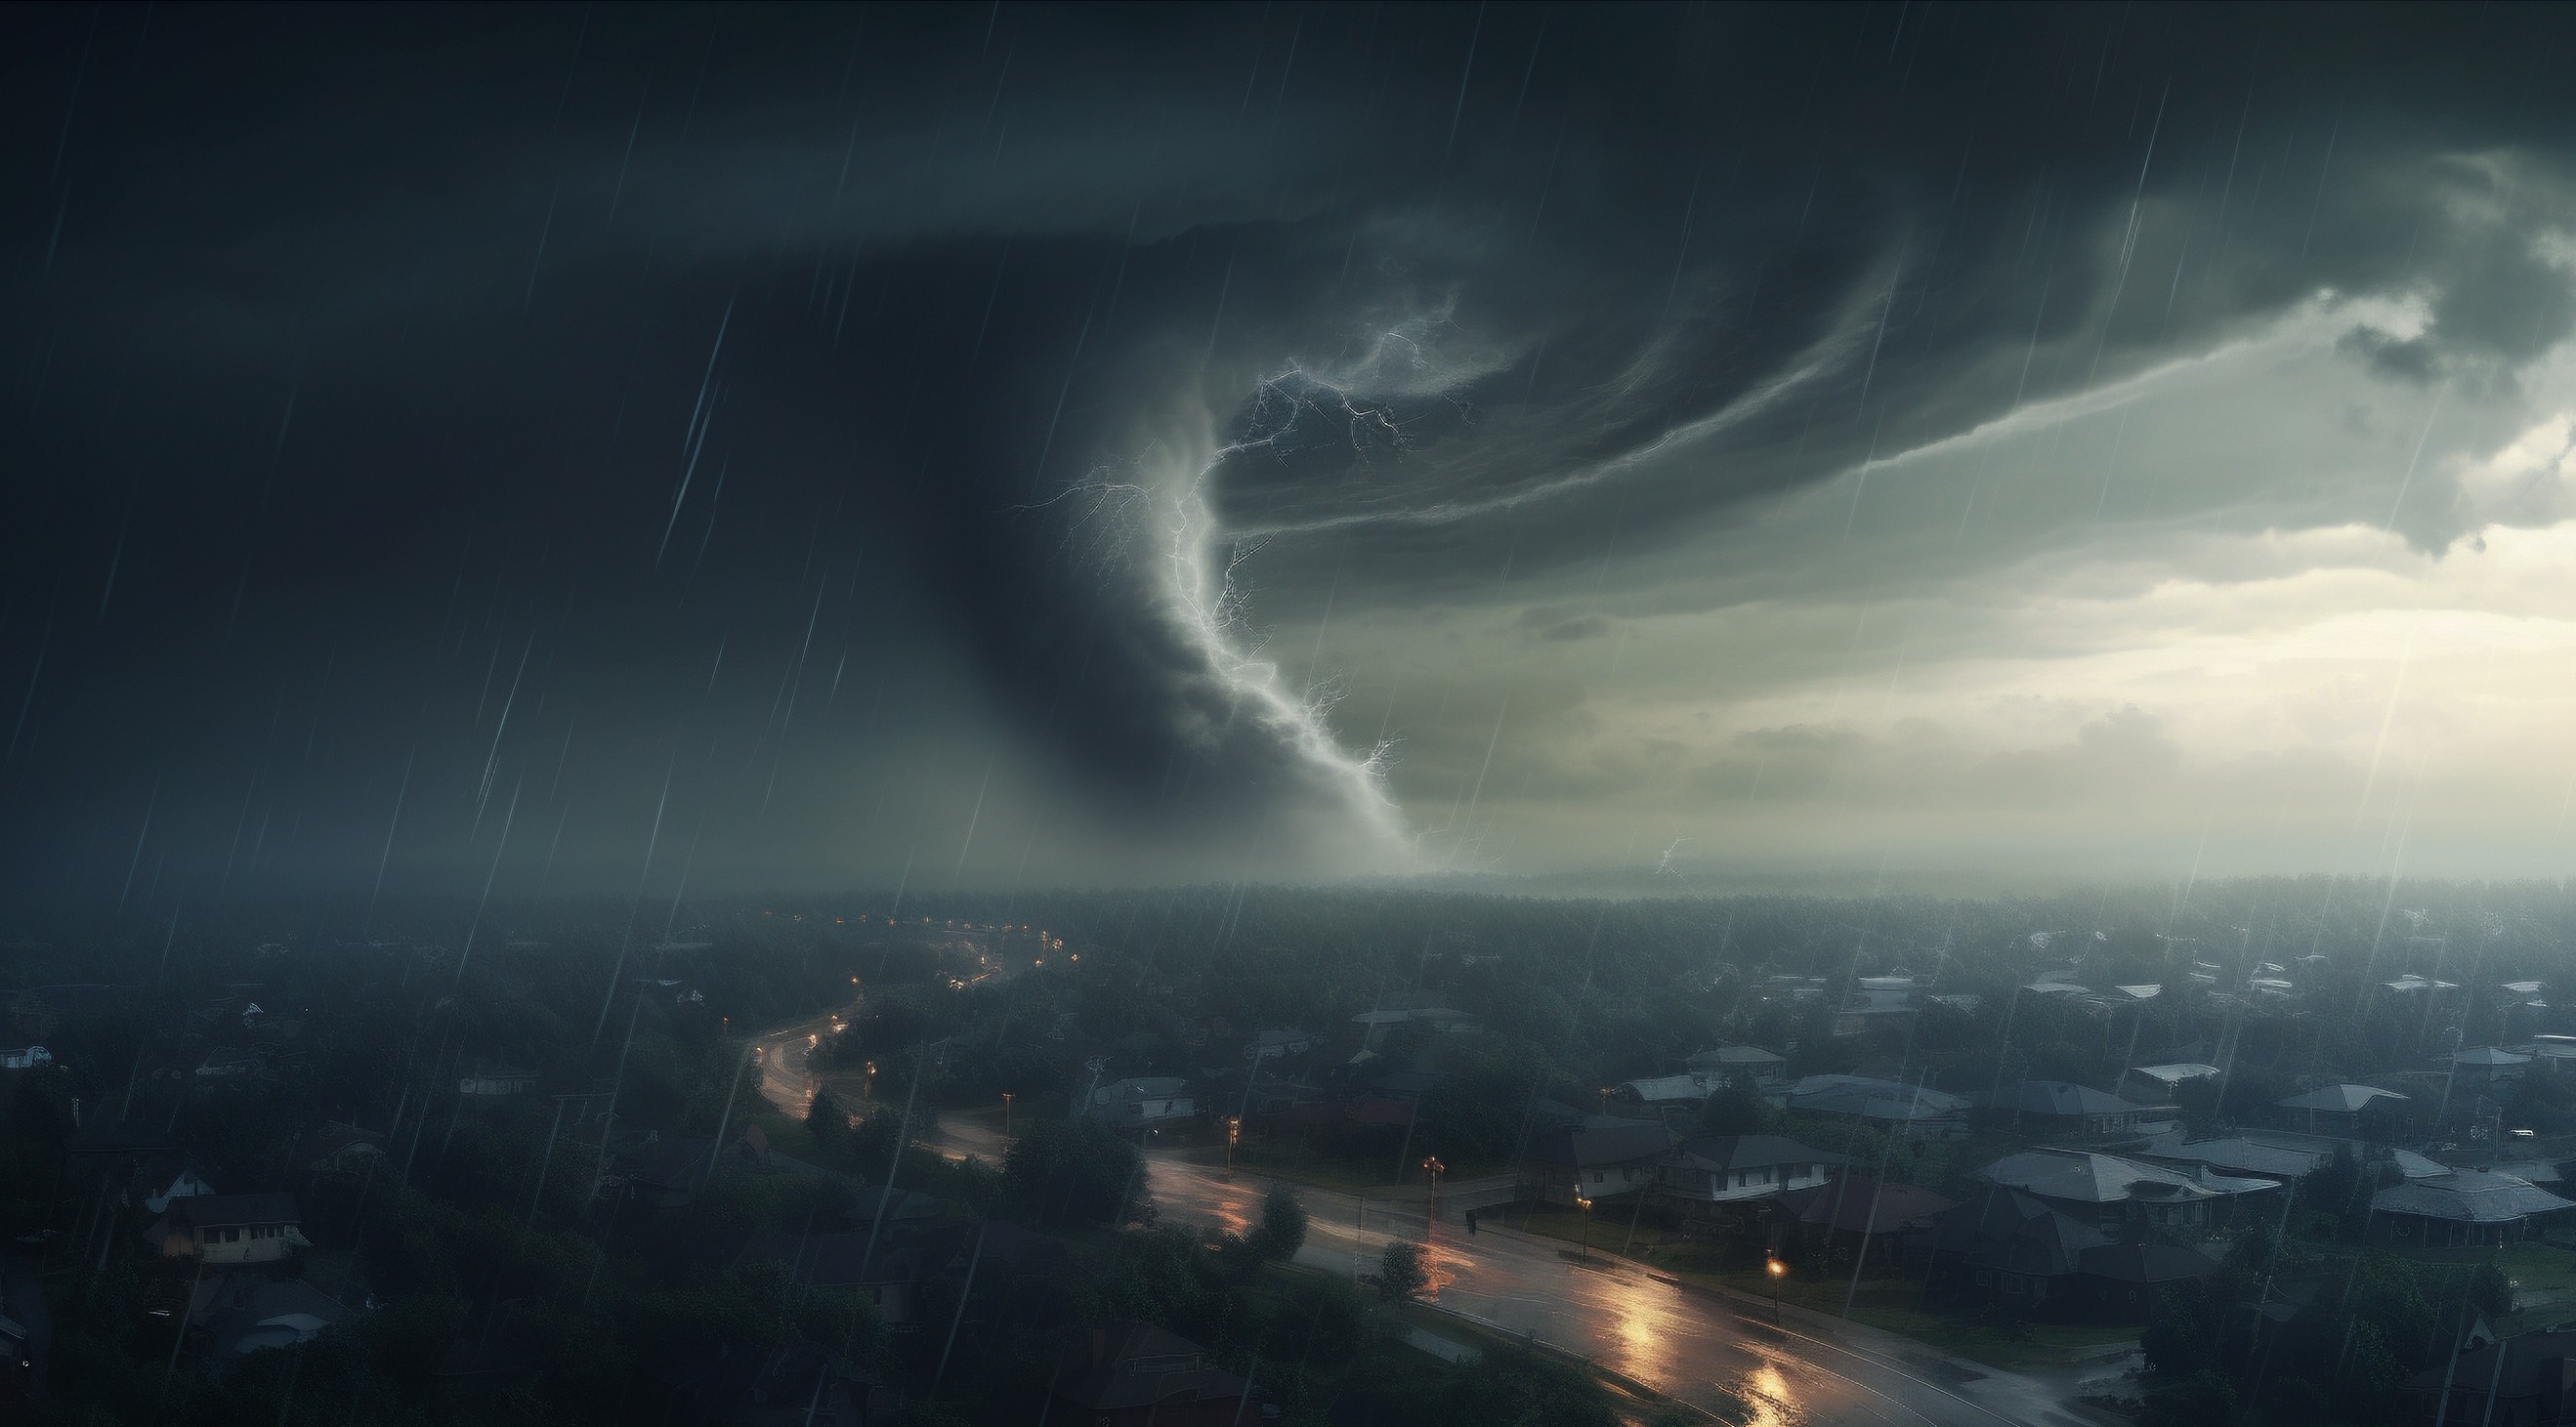 La Floride est l'un des États américains les plus touchés par les tornades, mais il est rare que le phénomène se produise en plein centre-ville comme ce fut le cas samedi. © xartproduction, Adobe Stock